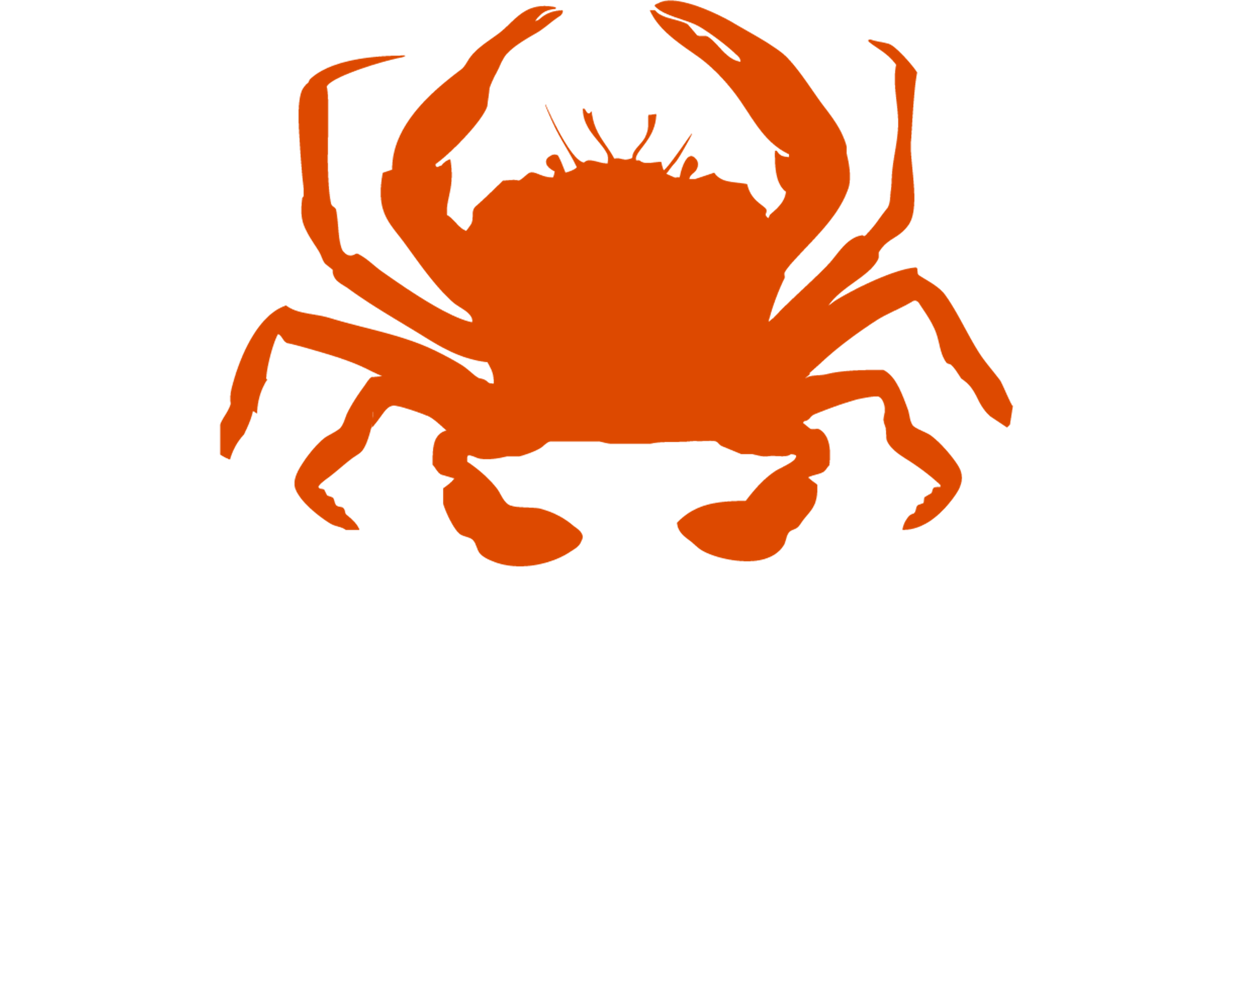 <a href="https://www.amppa.eu/en/partners-eng/">Municipality of Ustica</a>